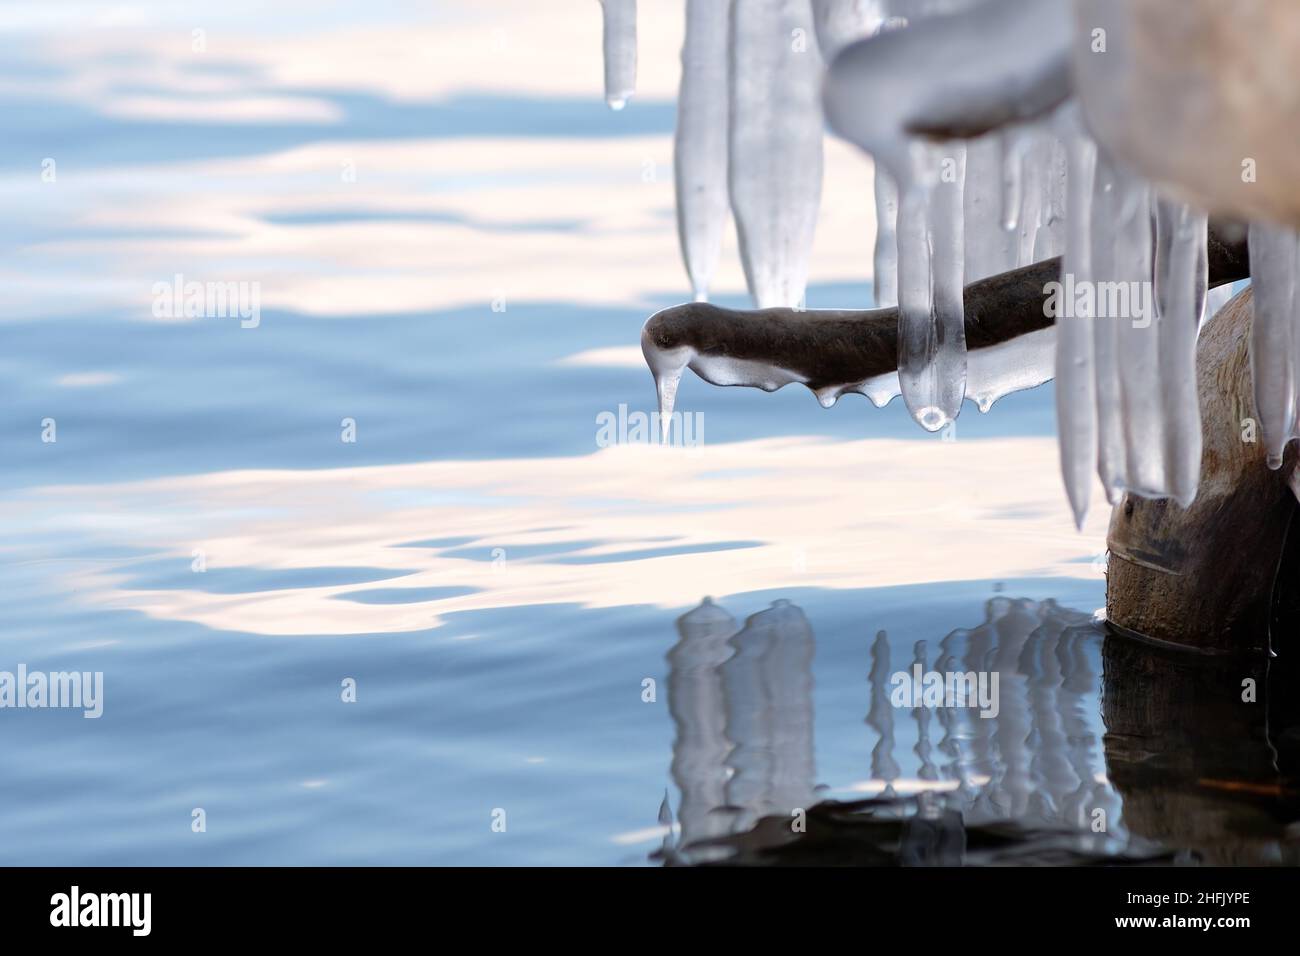 Ghiaccioli appesi sul lago. Soggetto radice esposta nel ghiaccio che assomiglia ad un'immersione dei pinguini dell'imperatore. Foto Stock